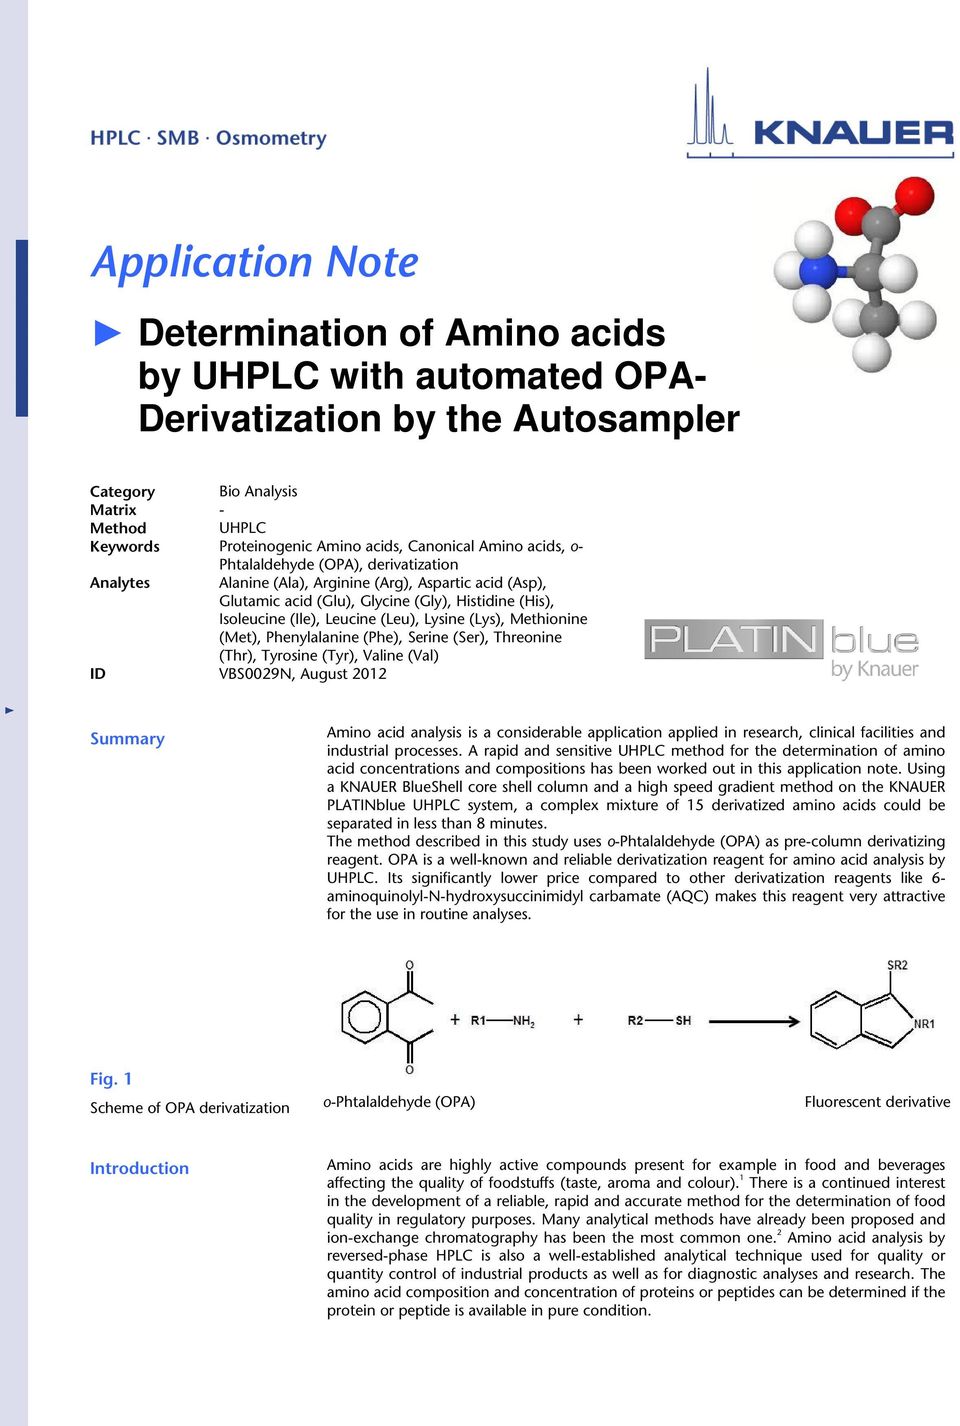 Lysine (Lys), Methionine (Met), Phenylalanine (Phe), Serine (Ser), Threonine (Thr), Tyrosine (Tyr), Valine (Val) ID VBS0029N, August 2012 Summary Amino acid analysis is a considerable application